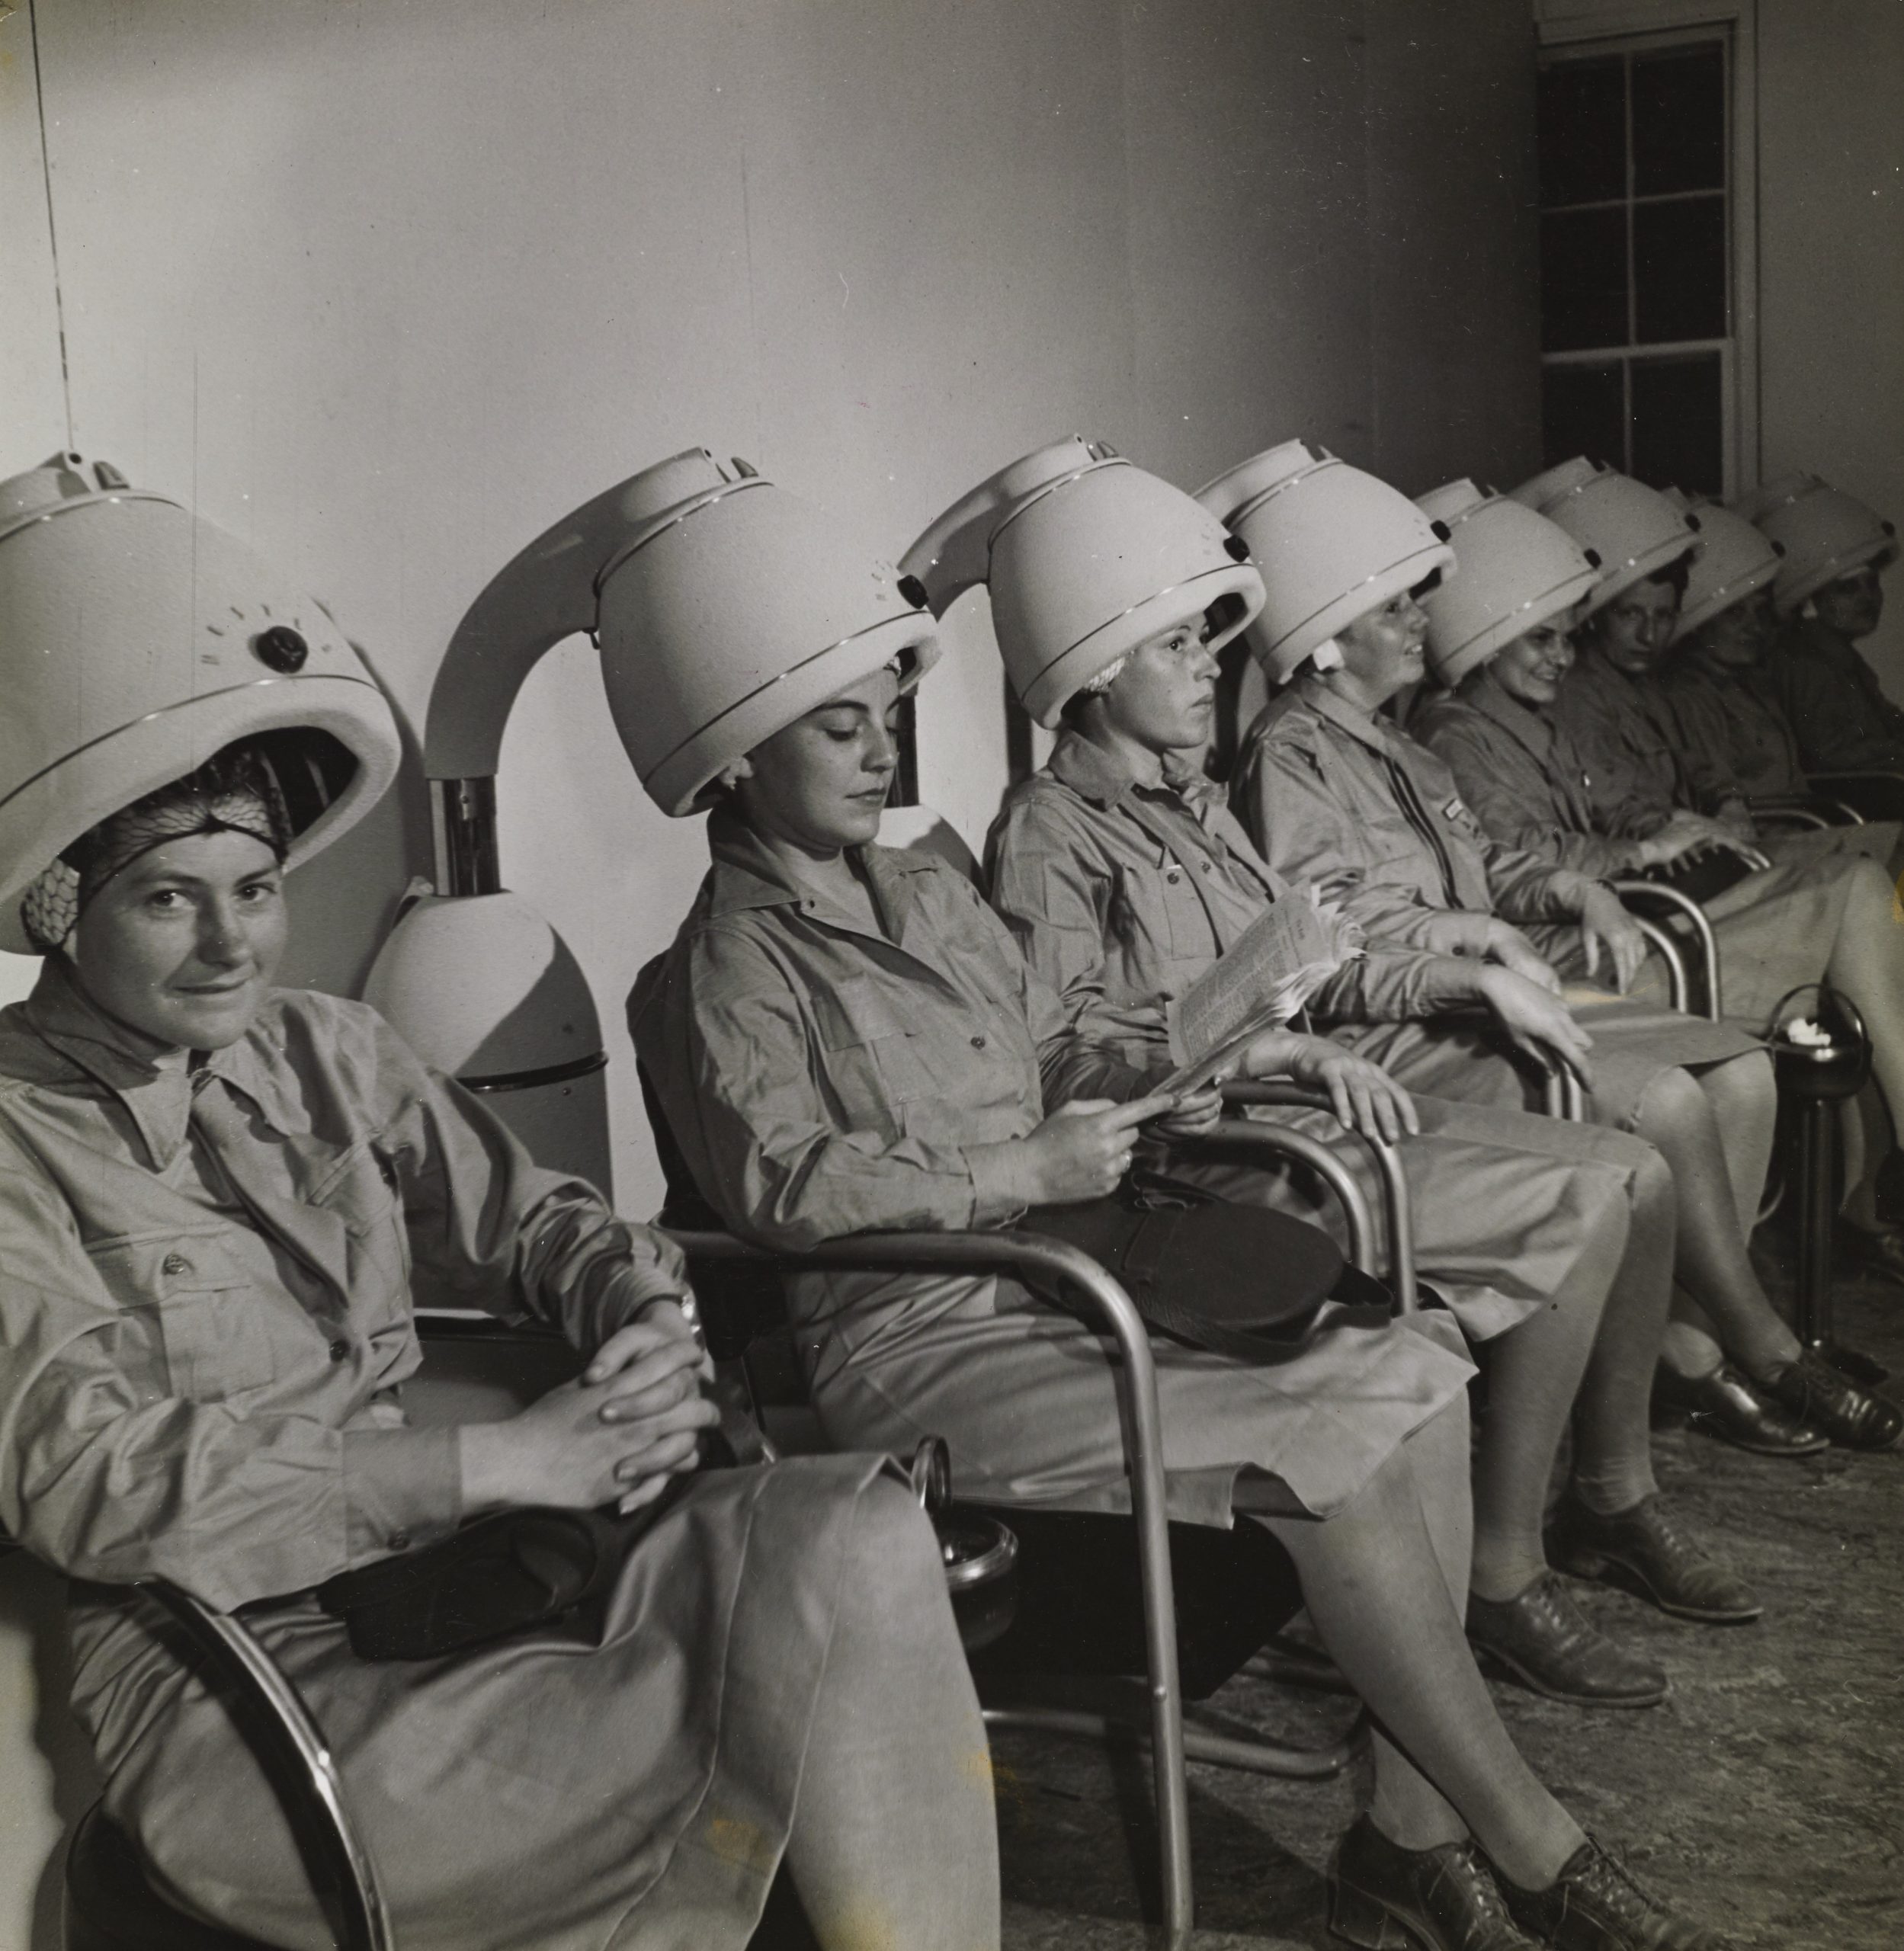 Officiers du WAAC (Women's Army Auxiliary Corps) assises sous un sèche-cheveux, en 1943.